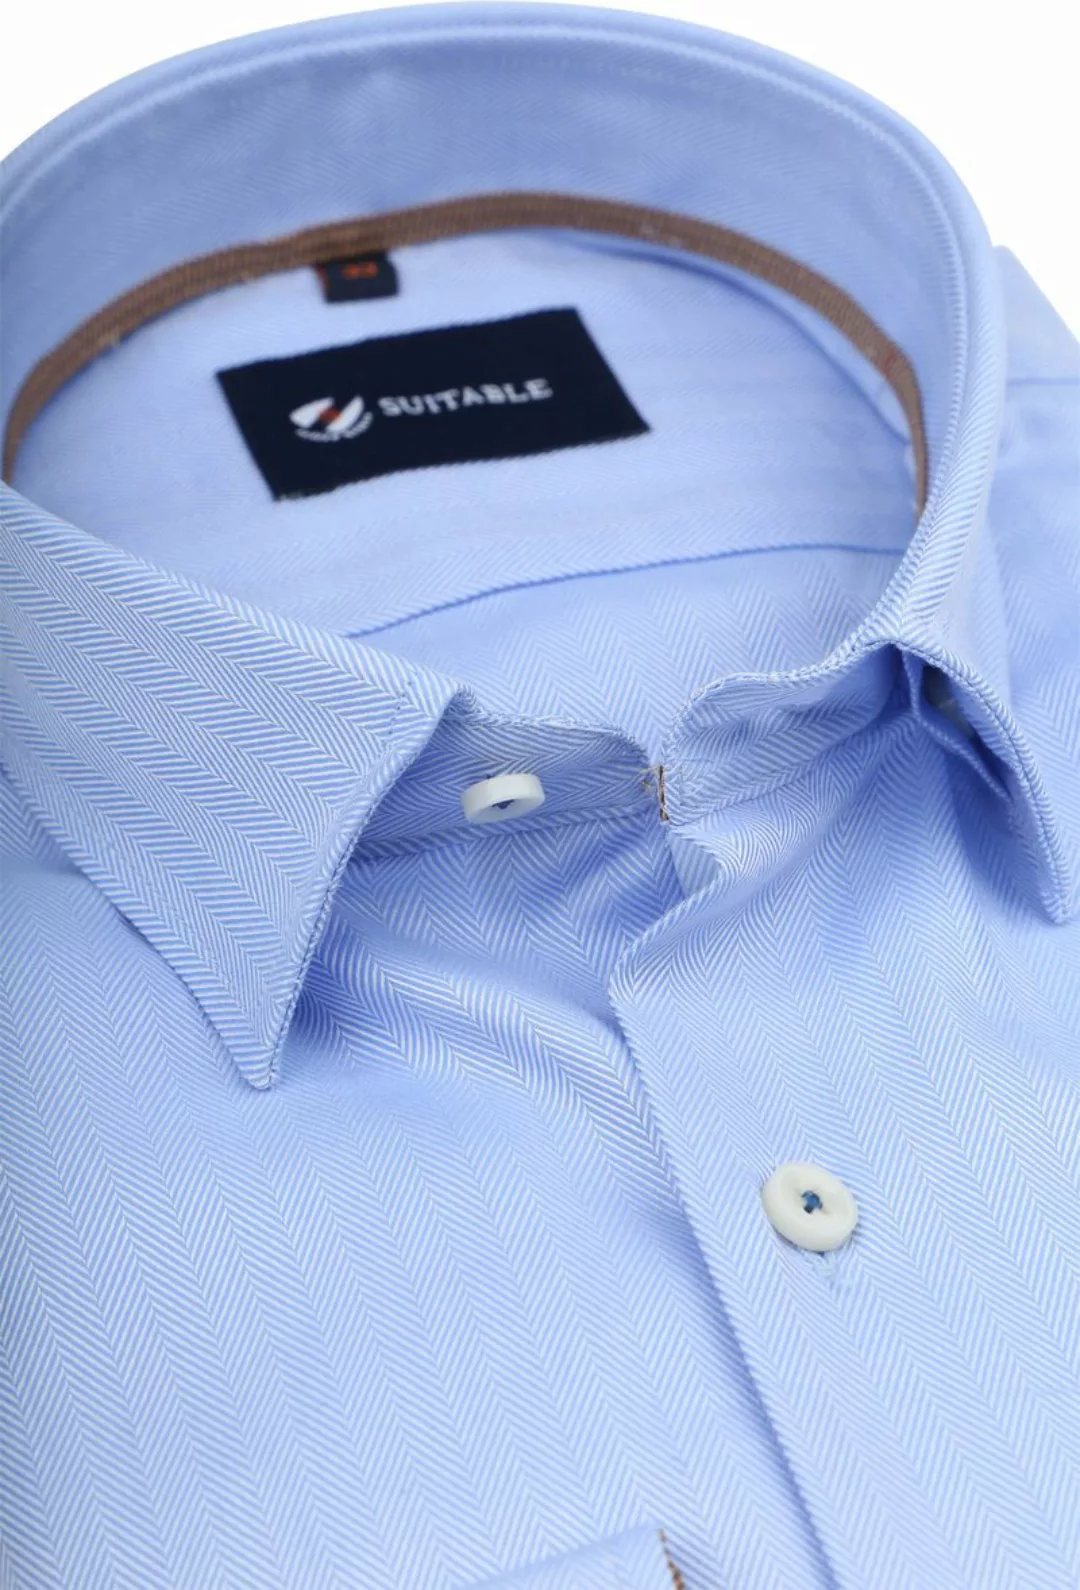 Suitable Hemd Herringbone Hellblau - Größe 42 günstig online kaufen